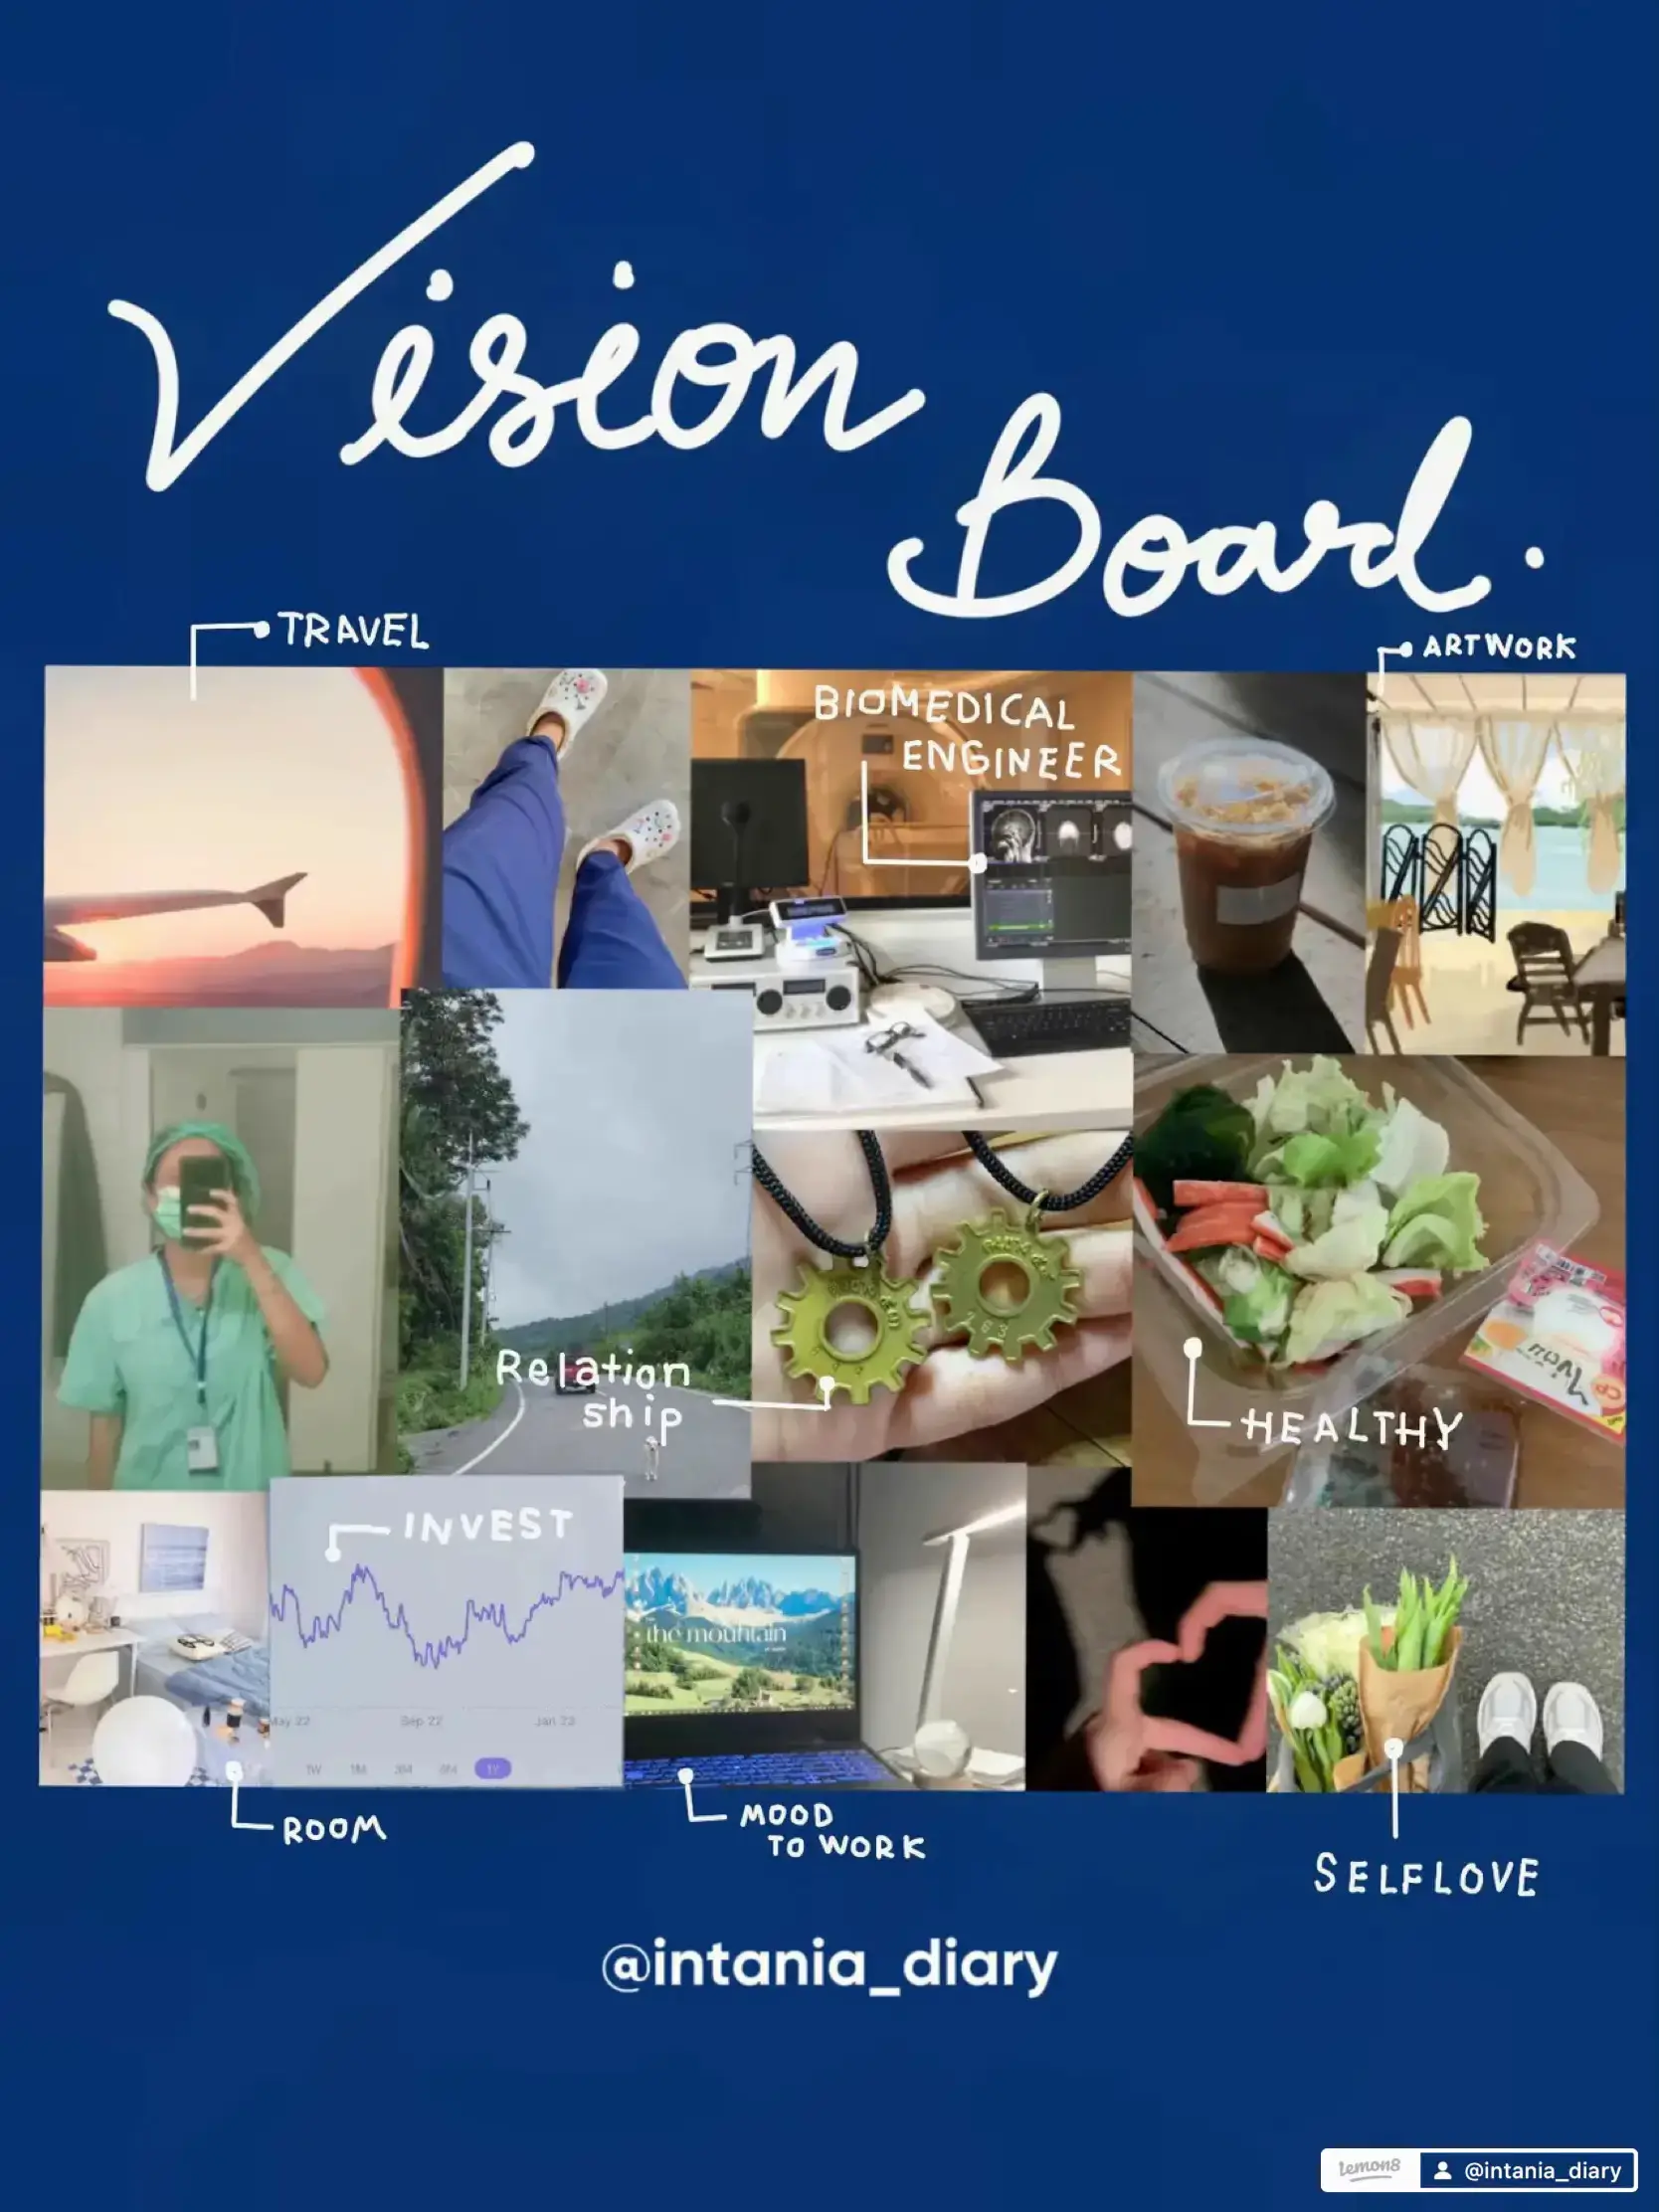 Make A Vision Board - (paperback) : Target